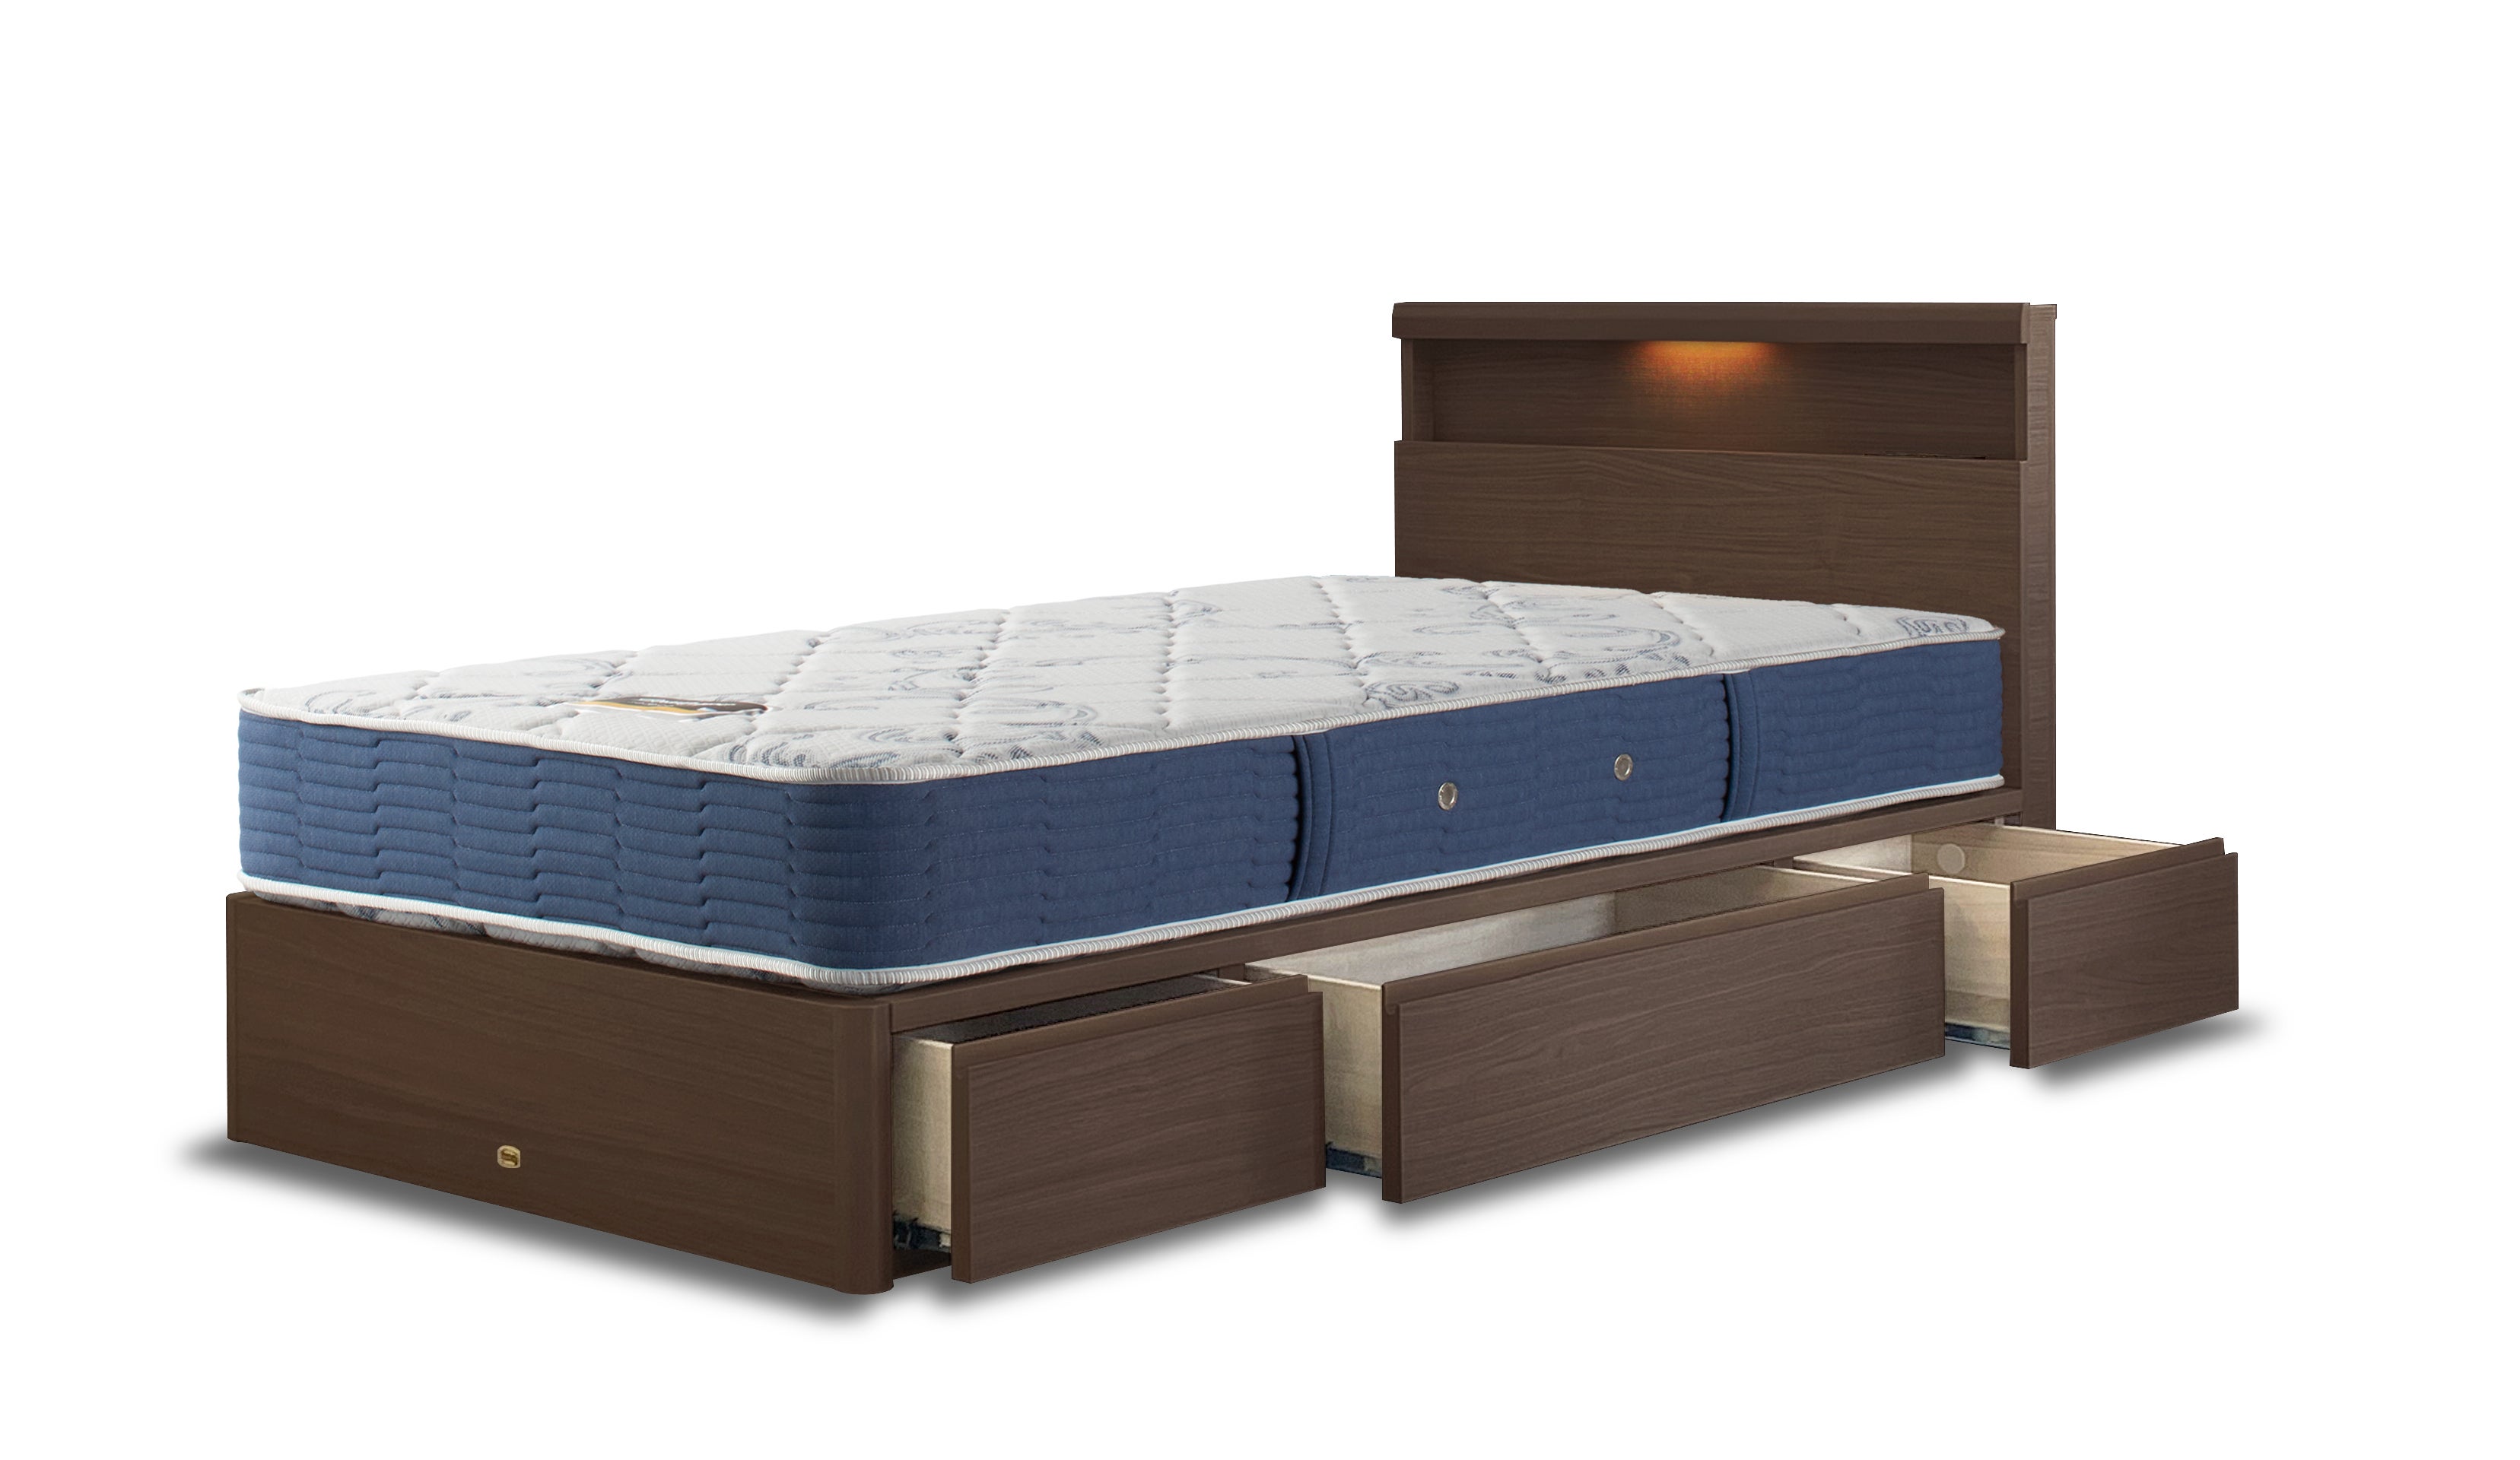 シングルベッド(抽出付)
幅99×長さ204×高さ85 床からマットレス上面までの高さ49.5㎝ 
税込154,000円
